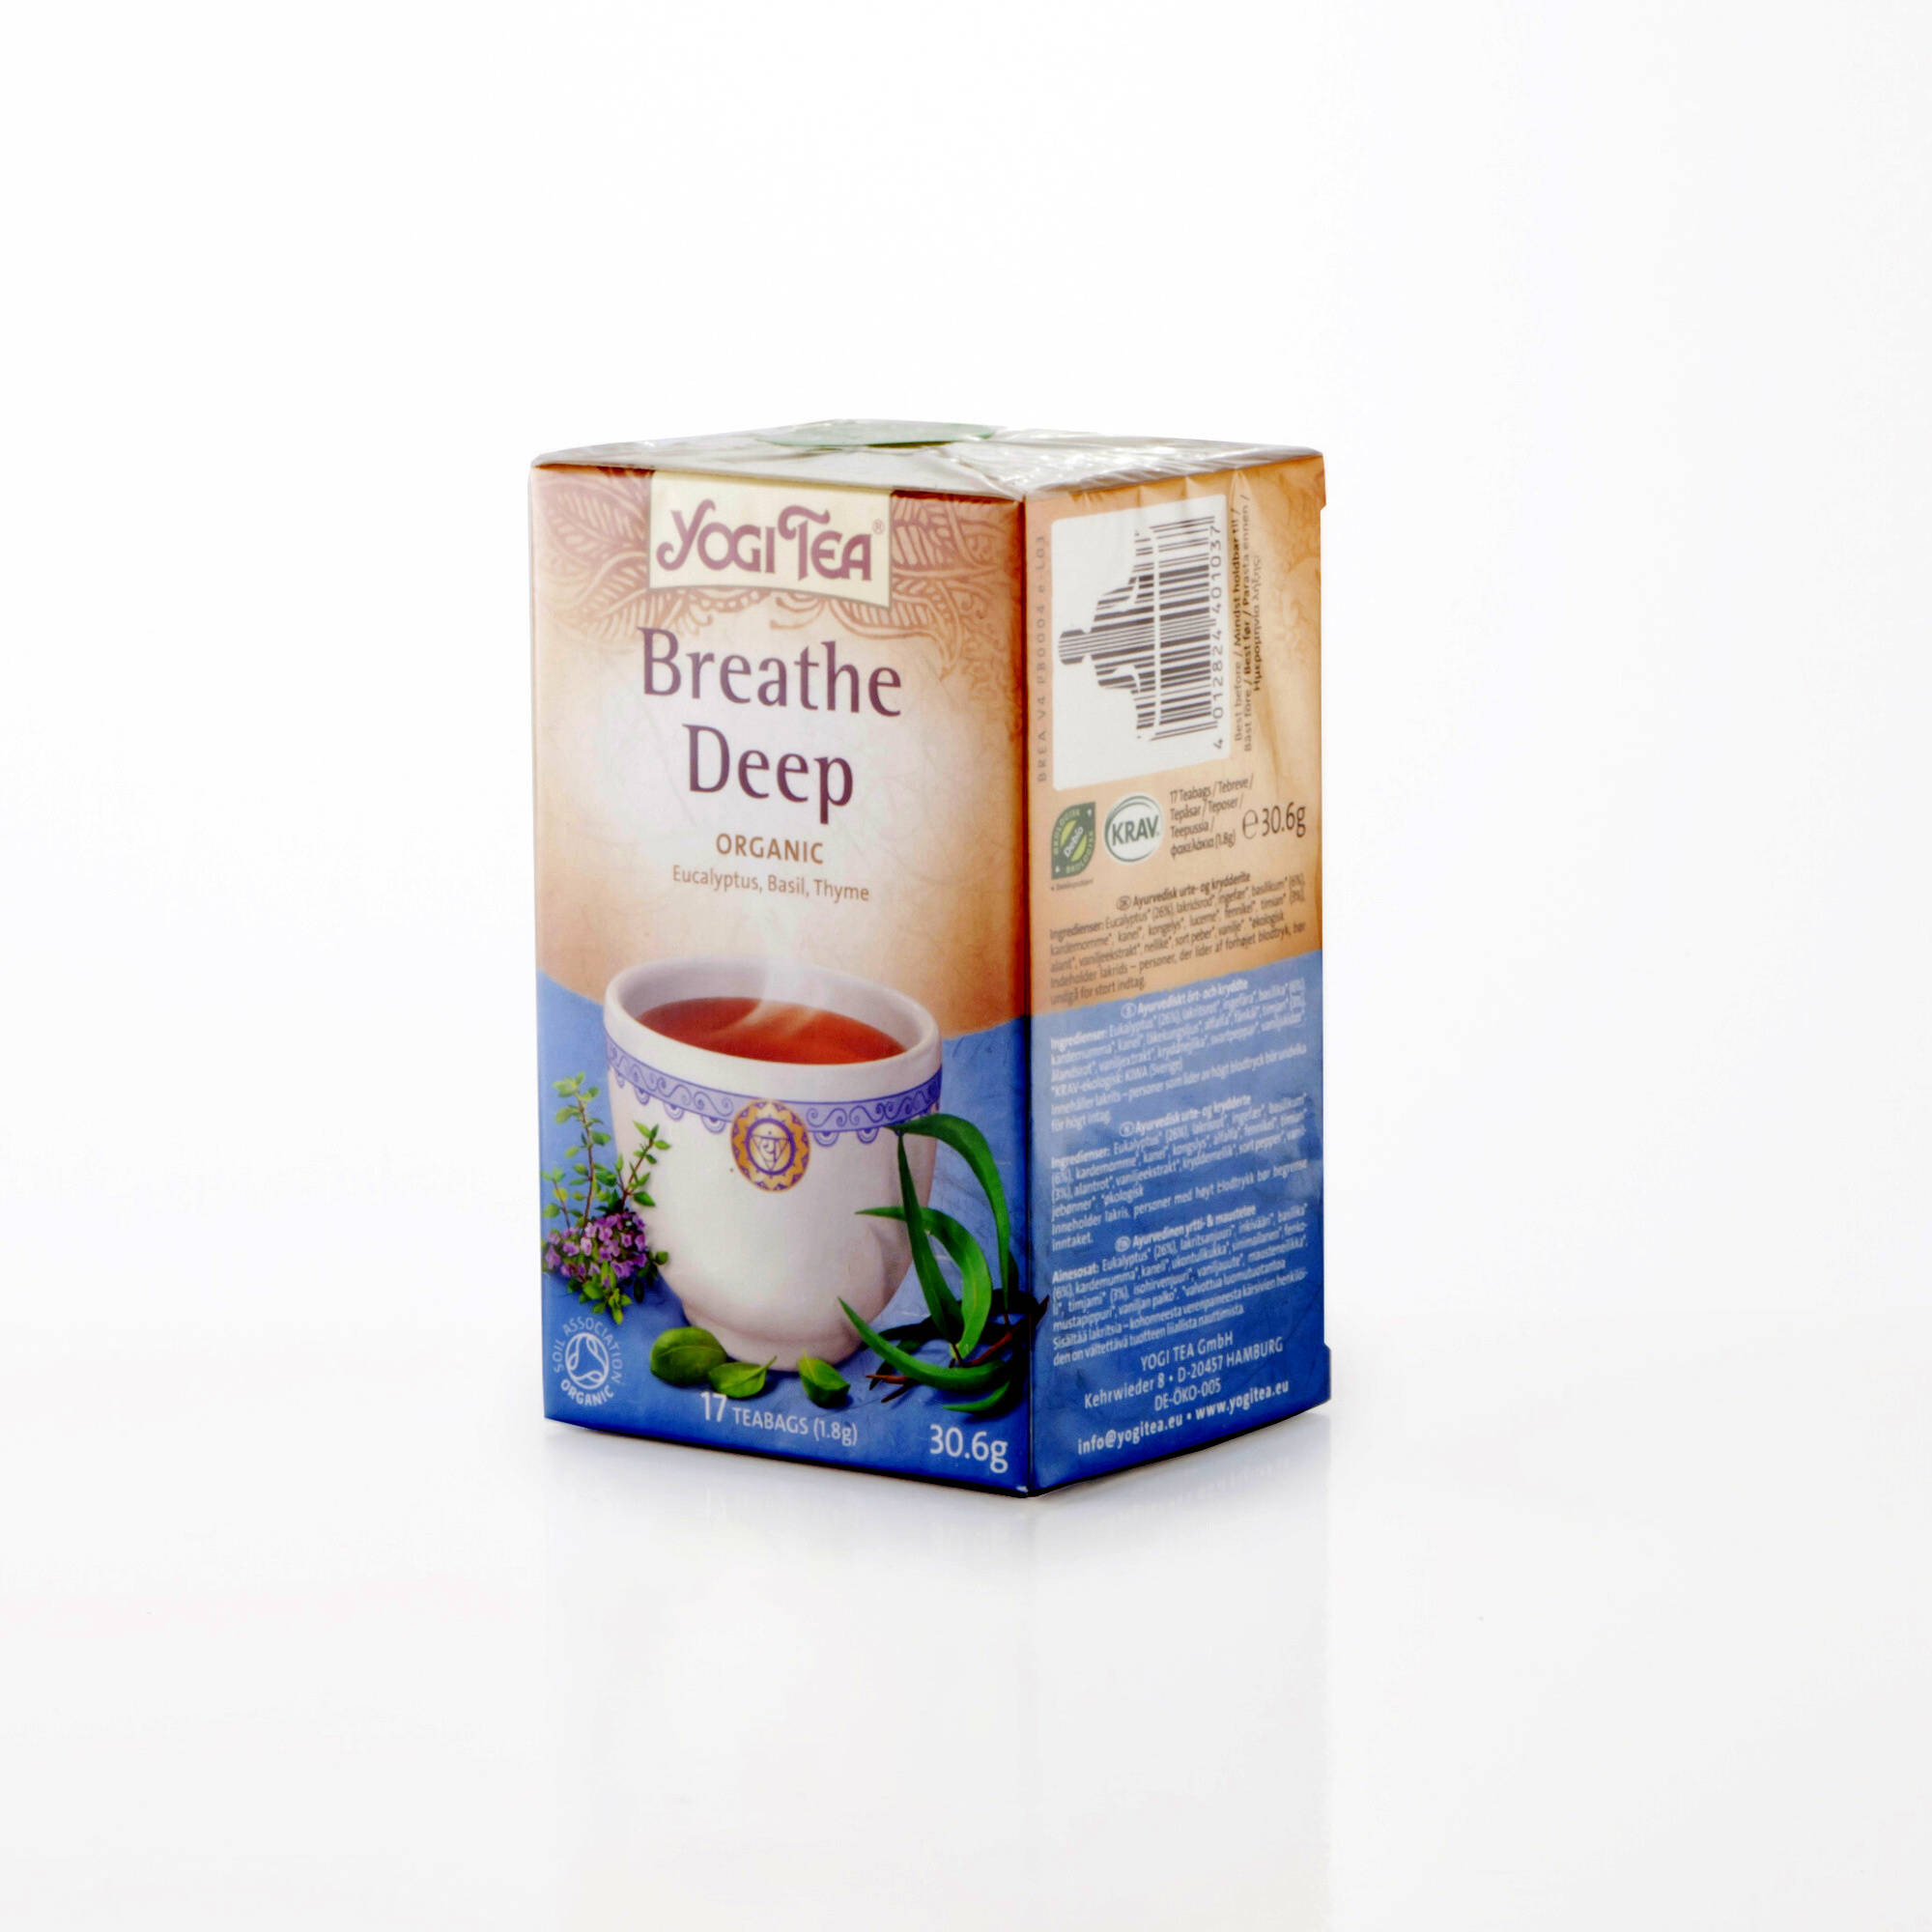 Yogi Tea Čaj Breathe Deep 17 ks, 30,6 g